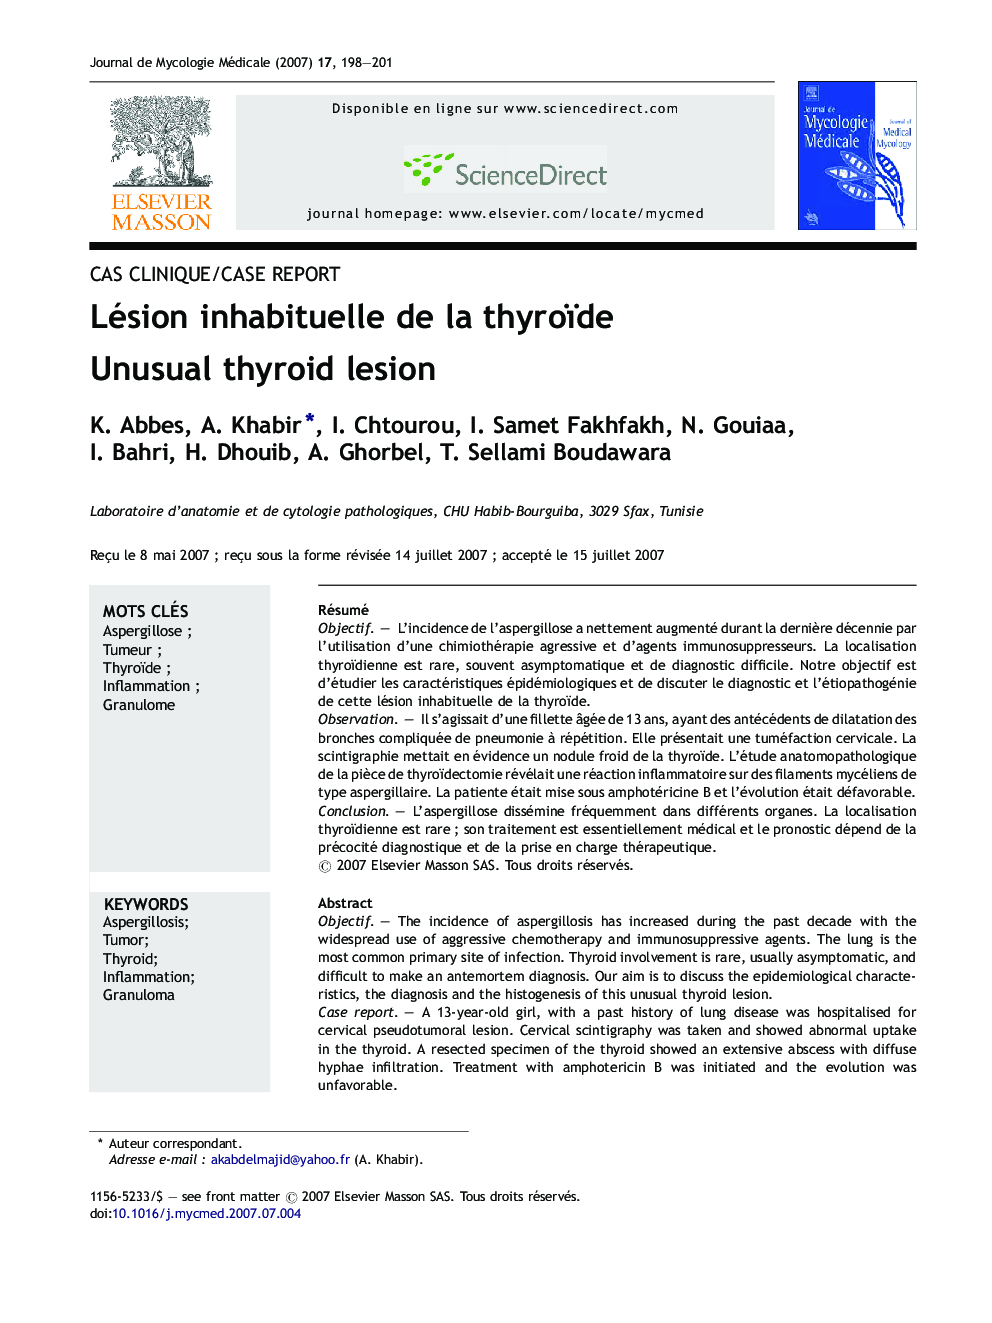 Lésion inhabituelle de la thyroïde